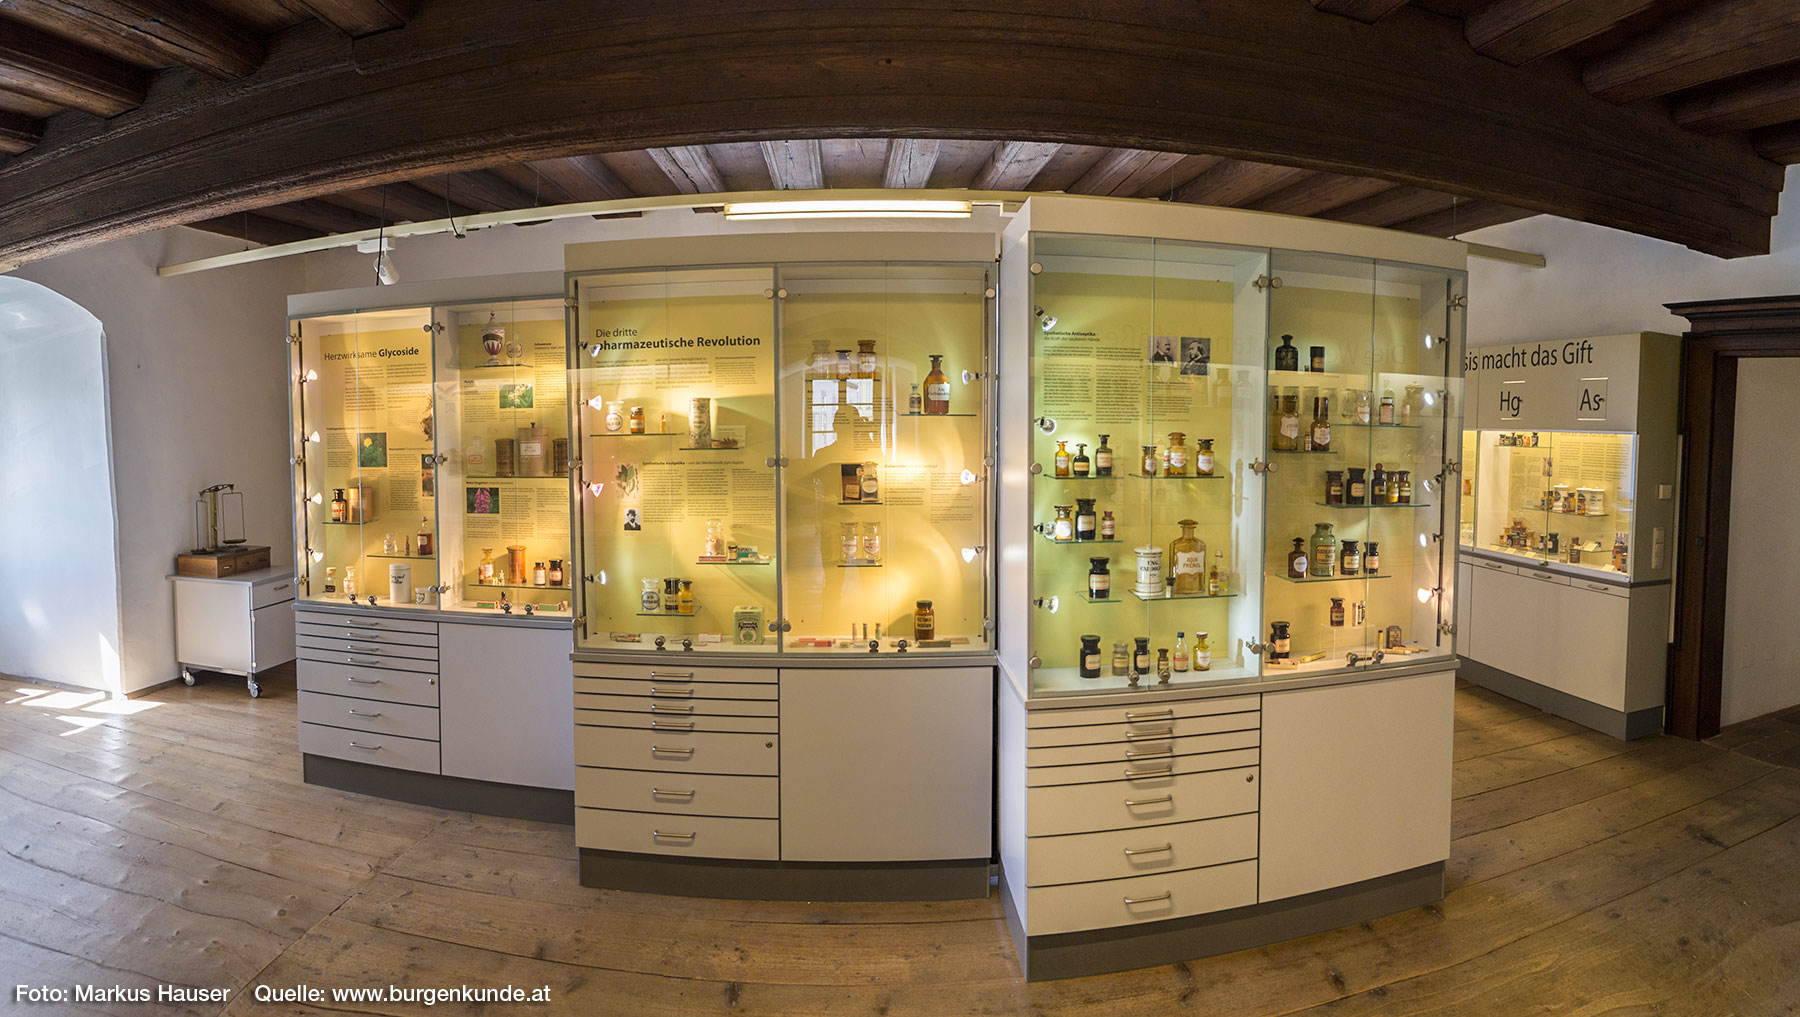 Das Apothekenmuseum im Schloss Pragstein ist einzigartig in ganz Österreichs und weit über die Grenzen hinaus bekannt.